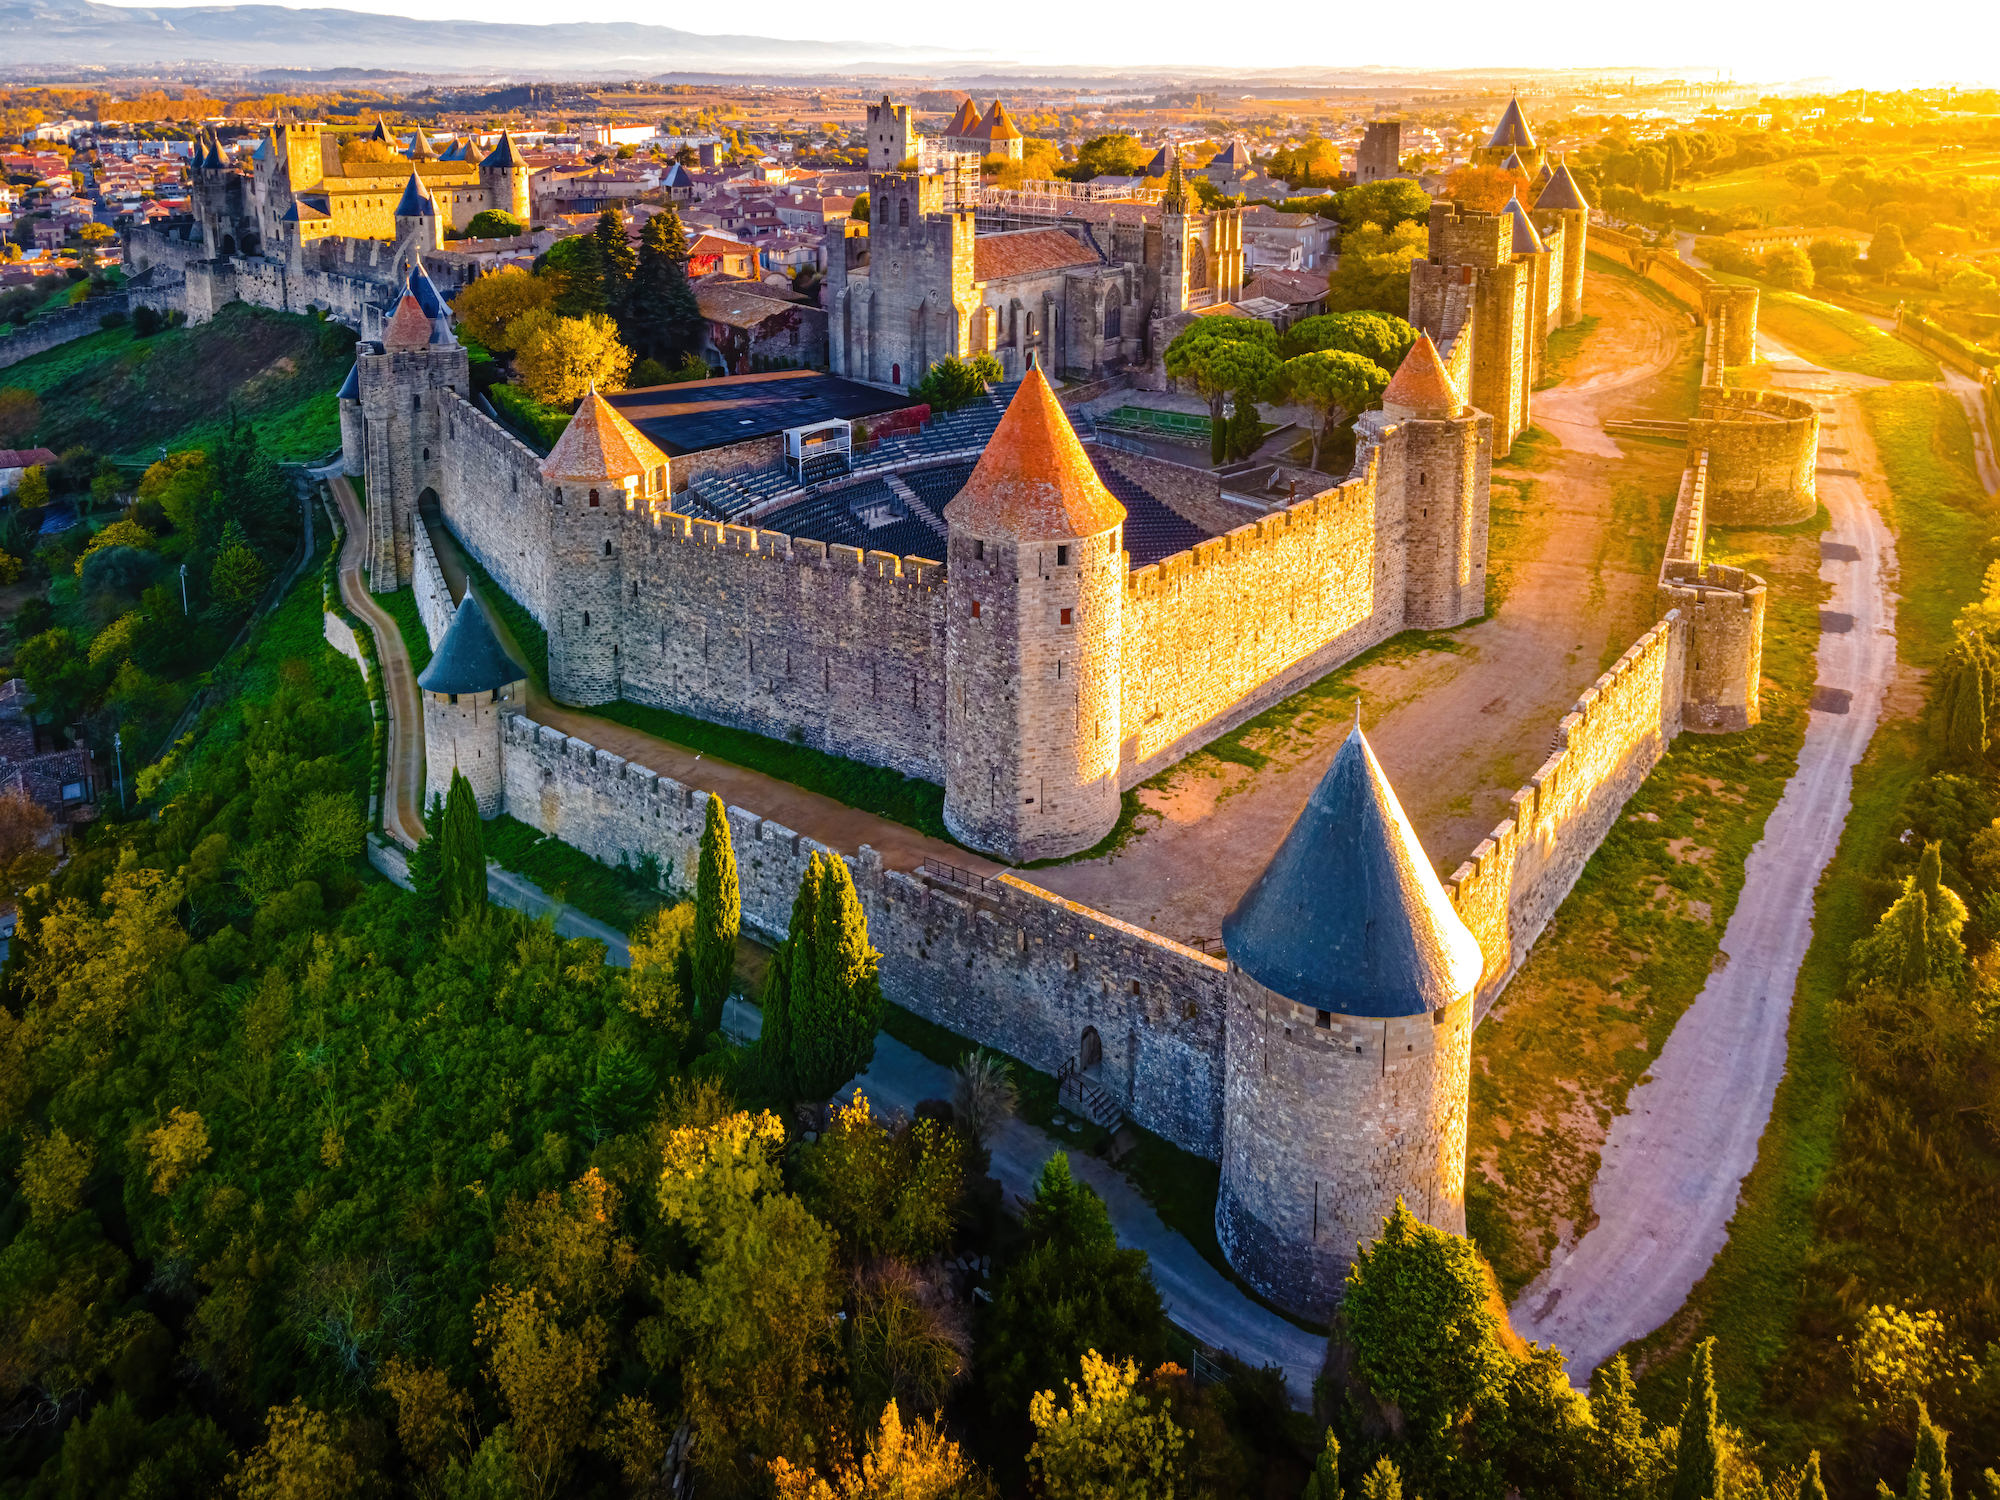 plus belles villes medievales france carcassonne proche bordeaux occitanie